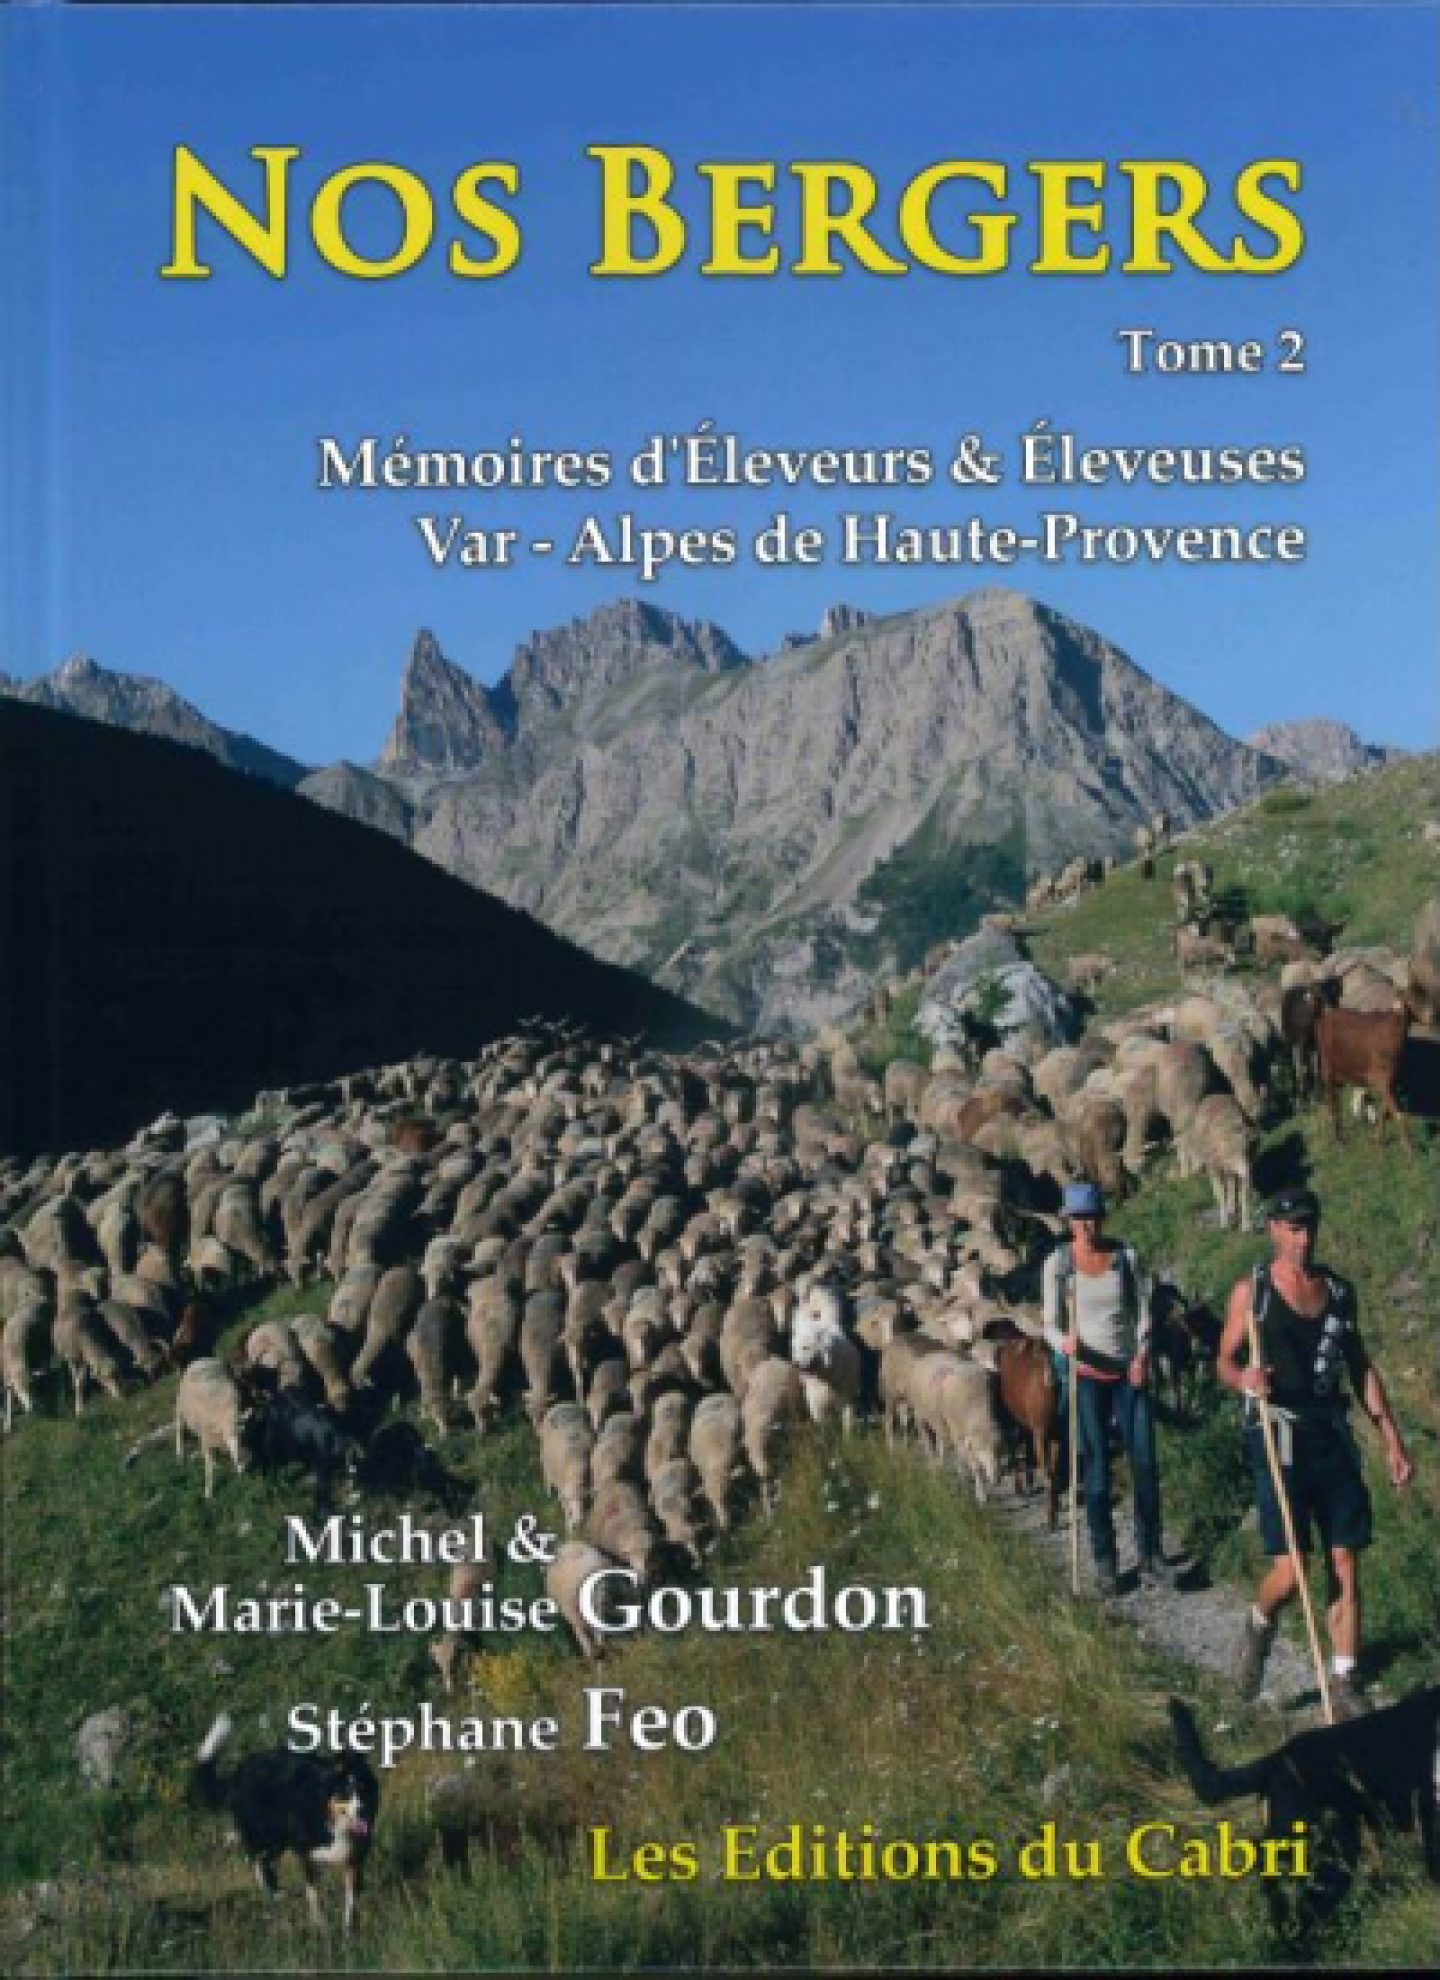 Nos bergers, Mémoires d’éleveurs et éleveuses Var et des Alpes de Haute-Provence, de Michel et Marie-Louise Gourdon & Stéphane Feo.